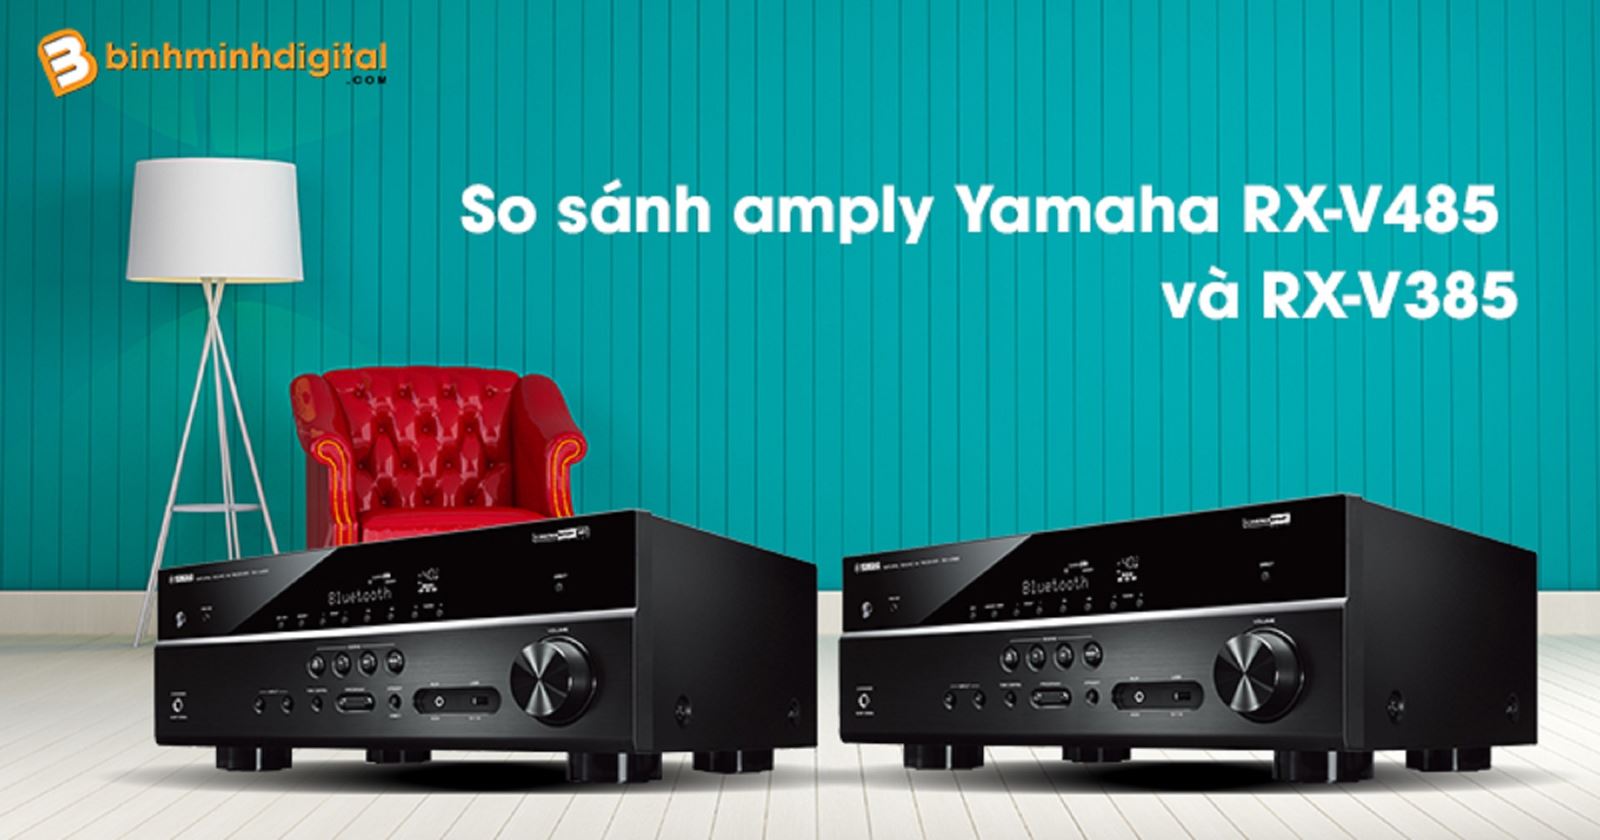 So sánh amply Yamaha RX-V485 và RX-V385